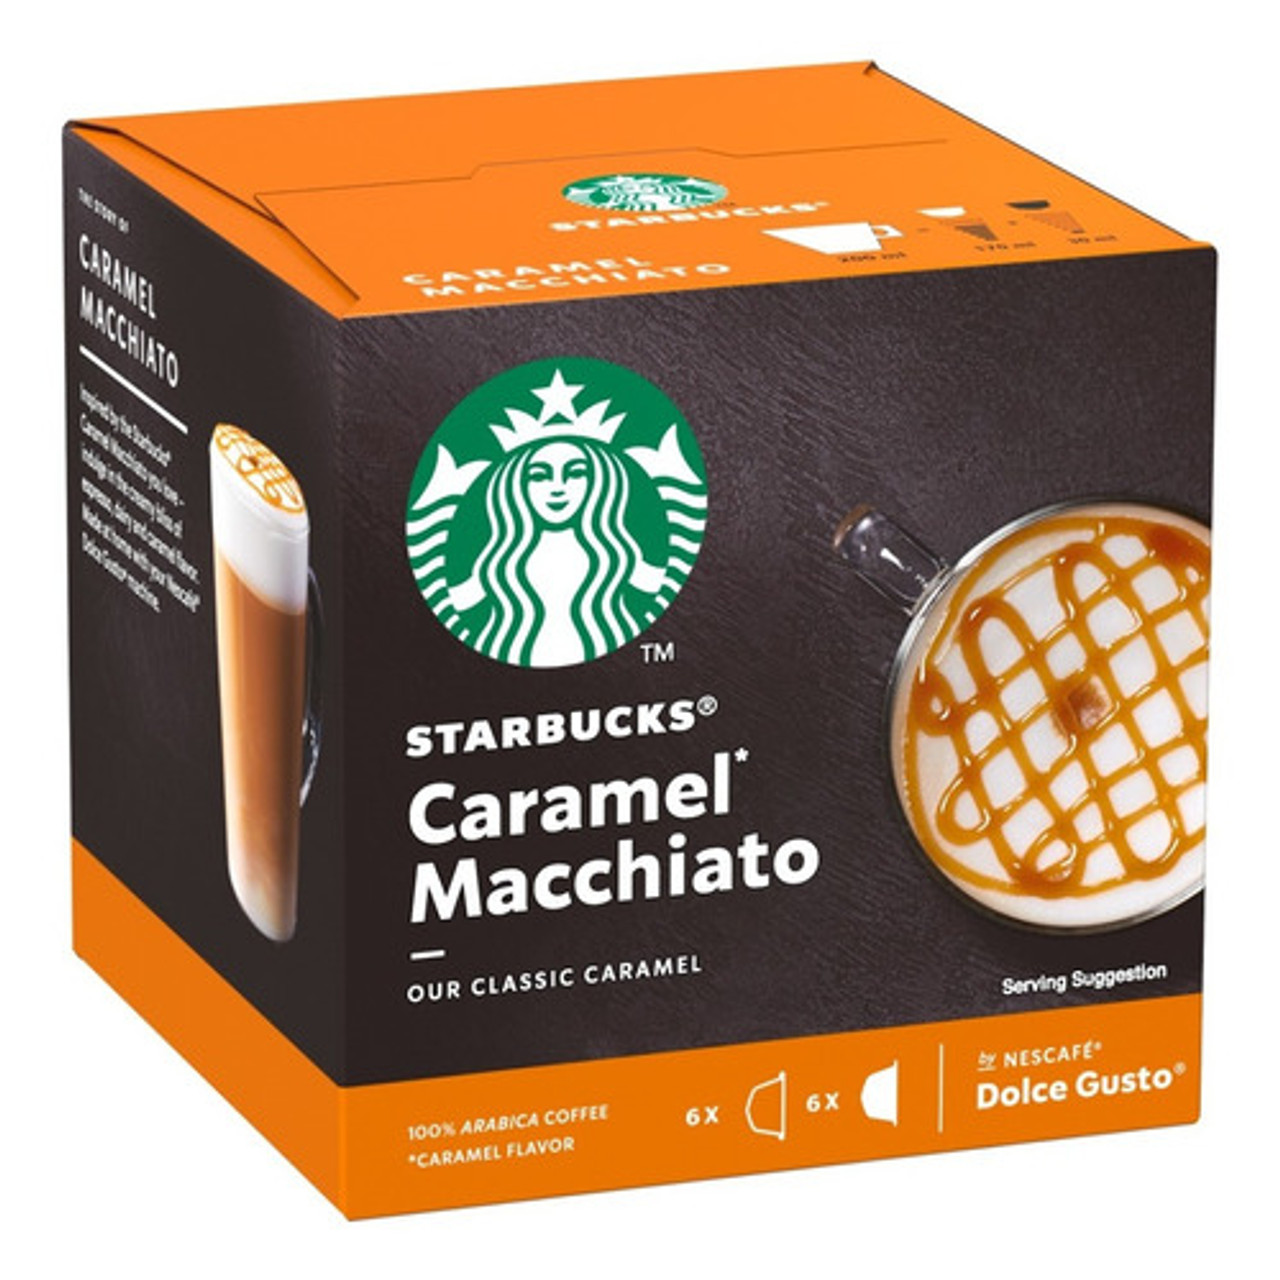 12 STARBUCKS® Caramel Macchiato capsules by Nescafé® Dolce Gusto®